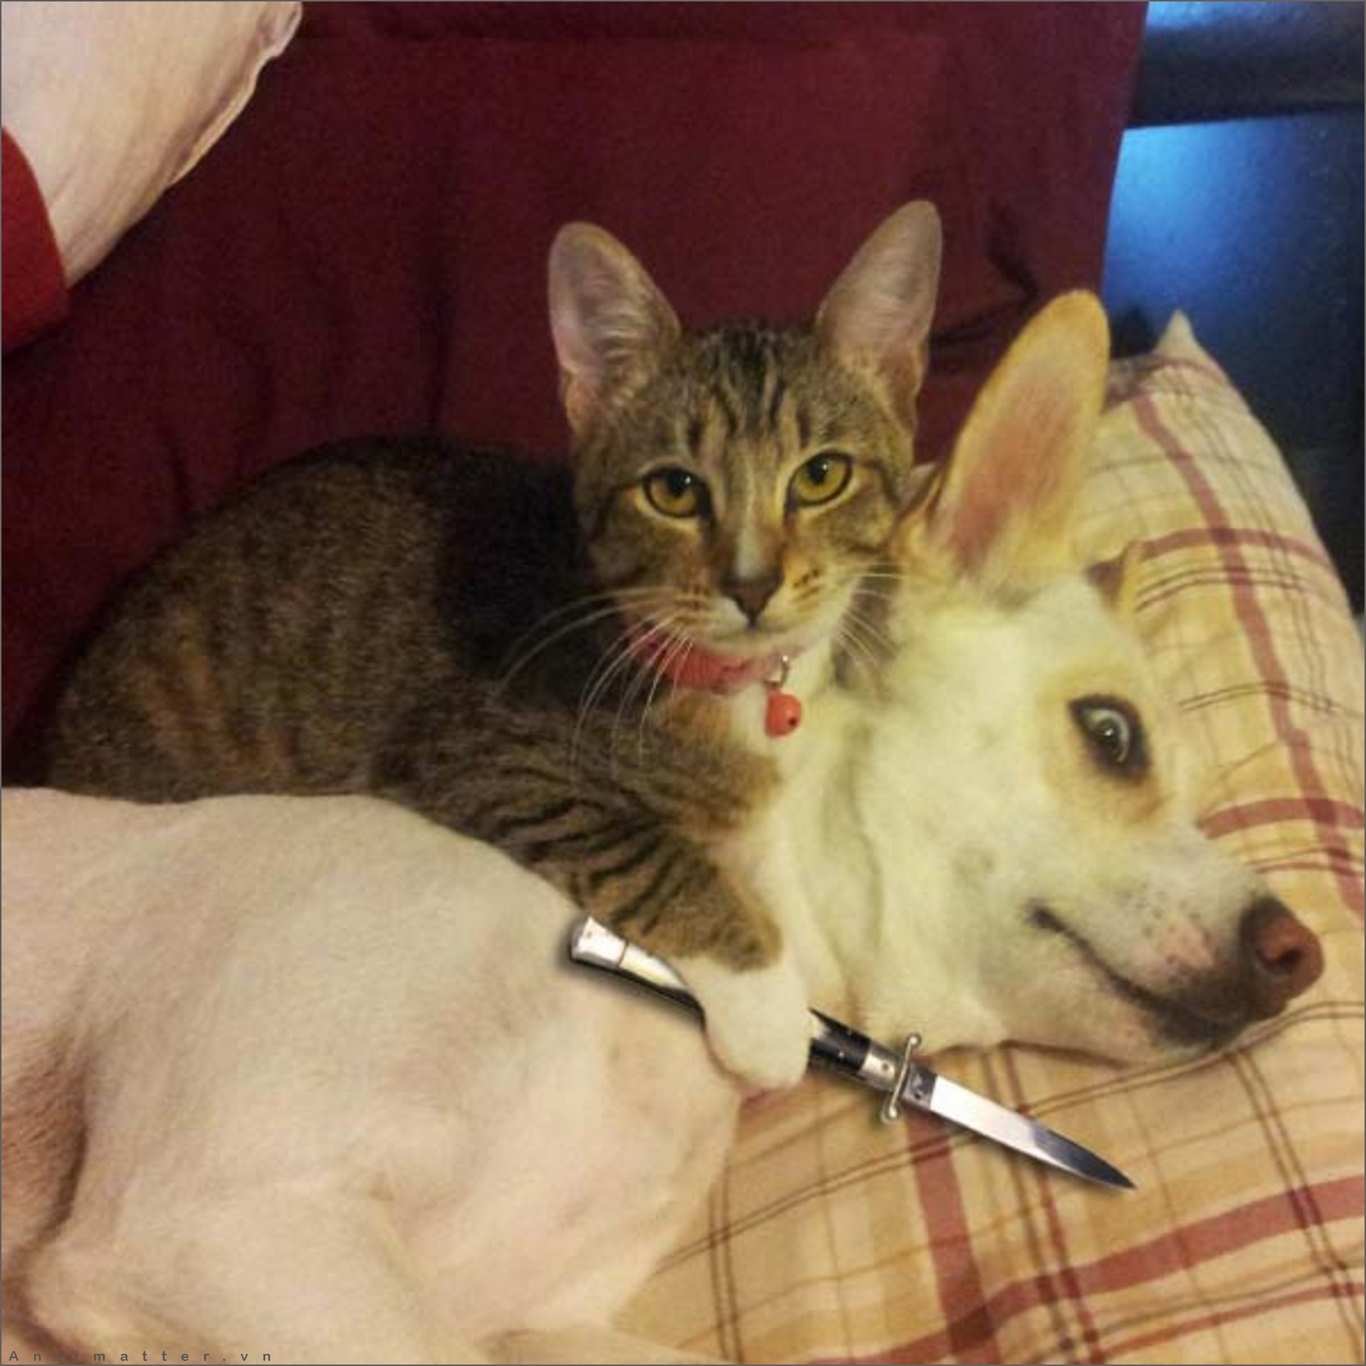 Share hình ảnh mèo cầm dao bá đạo mới nhất